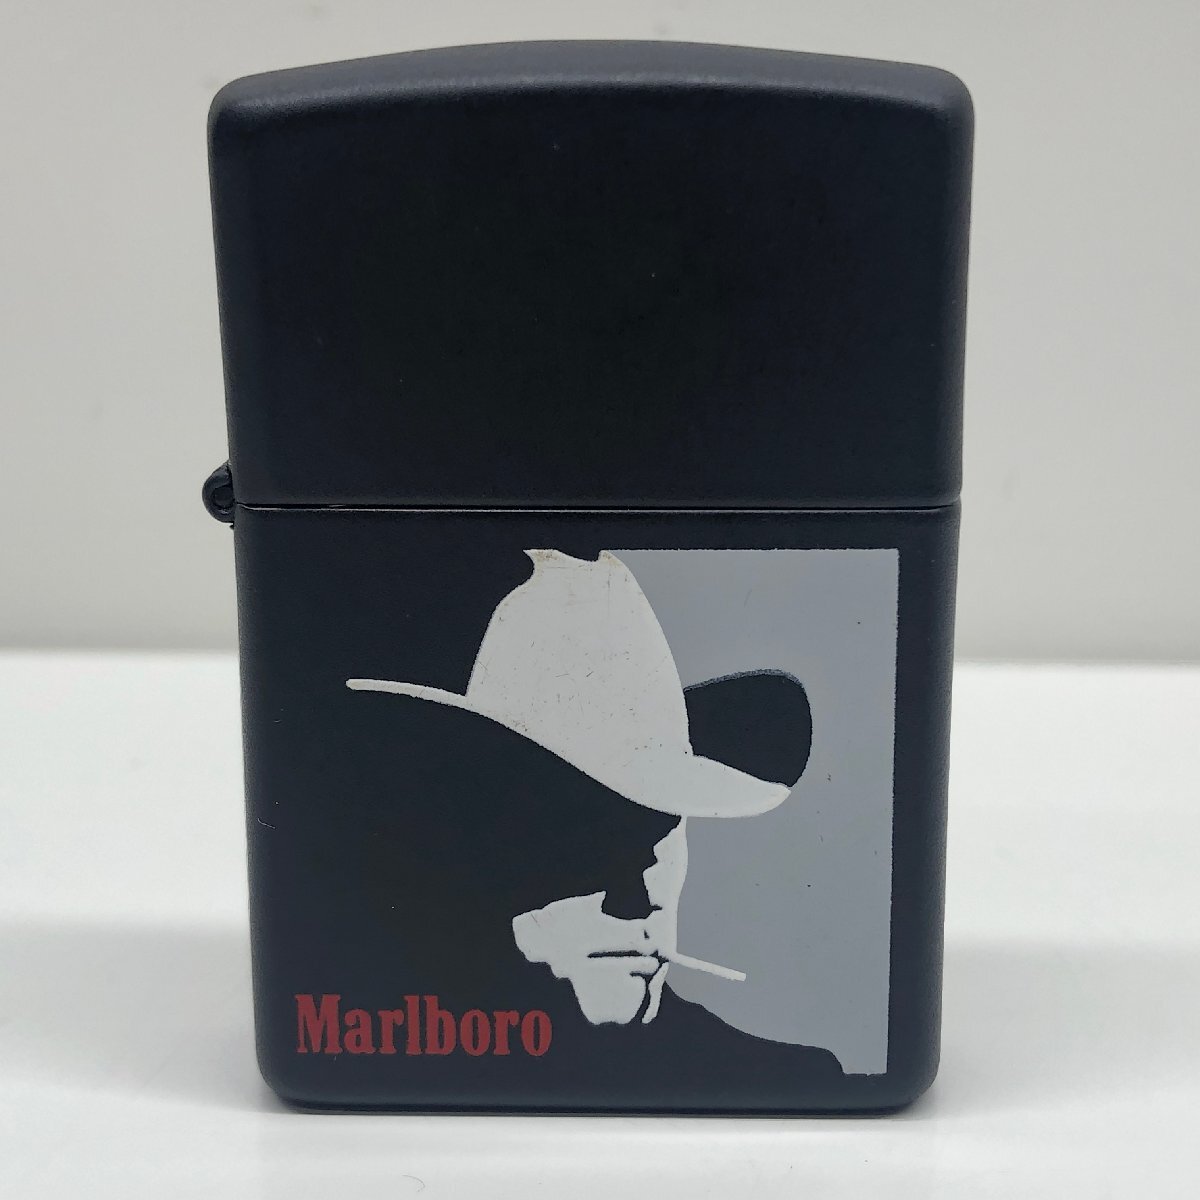 34【未使用】Marlboro マルボロ ZIPPO ジッポ オイルライター 喫煙具 喫煙グッズ  コレクション 本体のみ 動作未確認の画像1